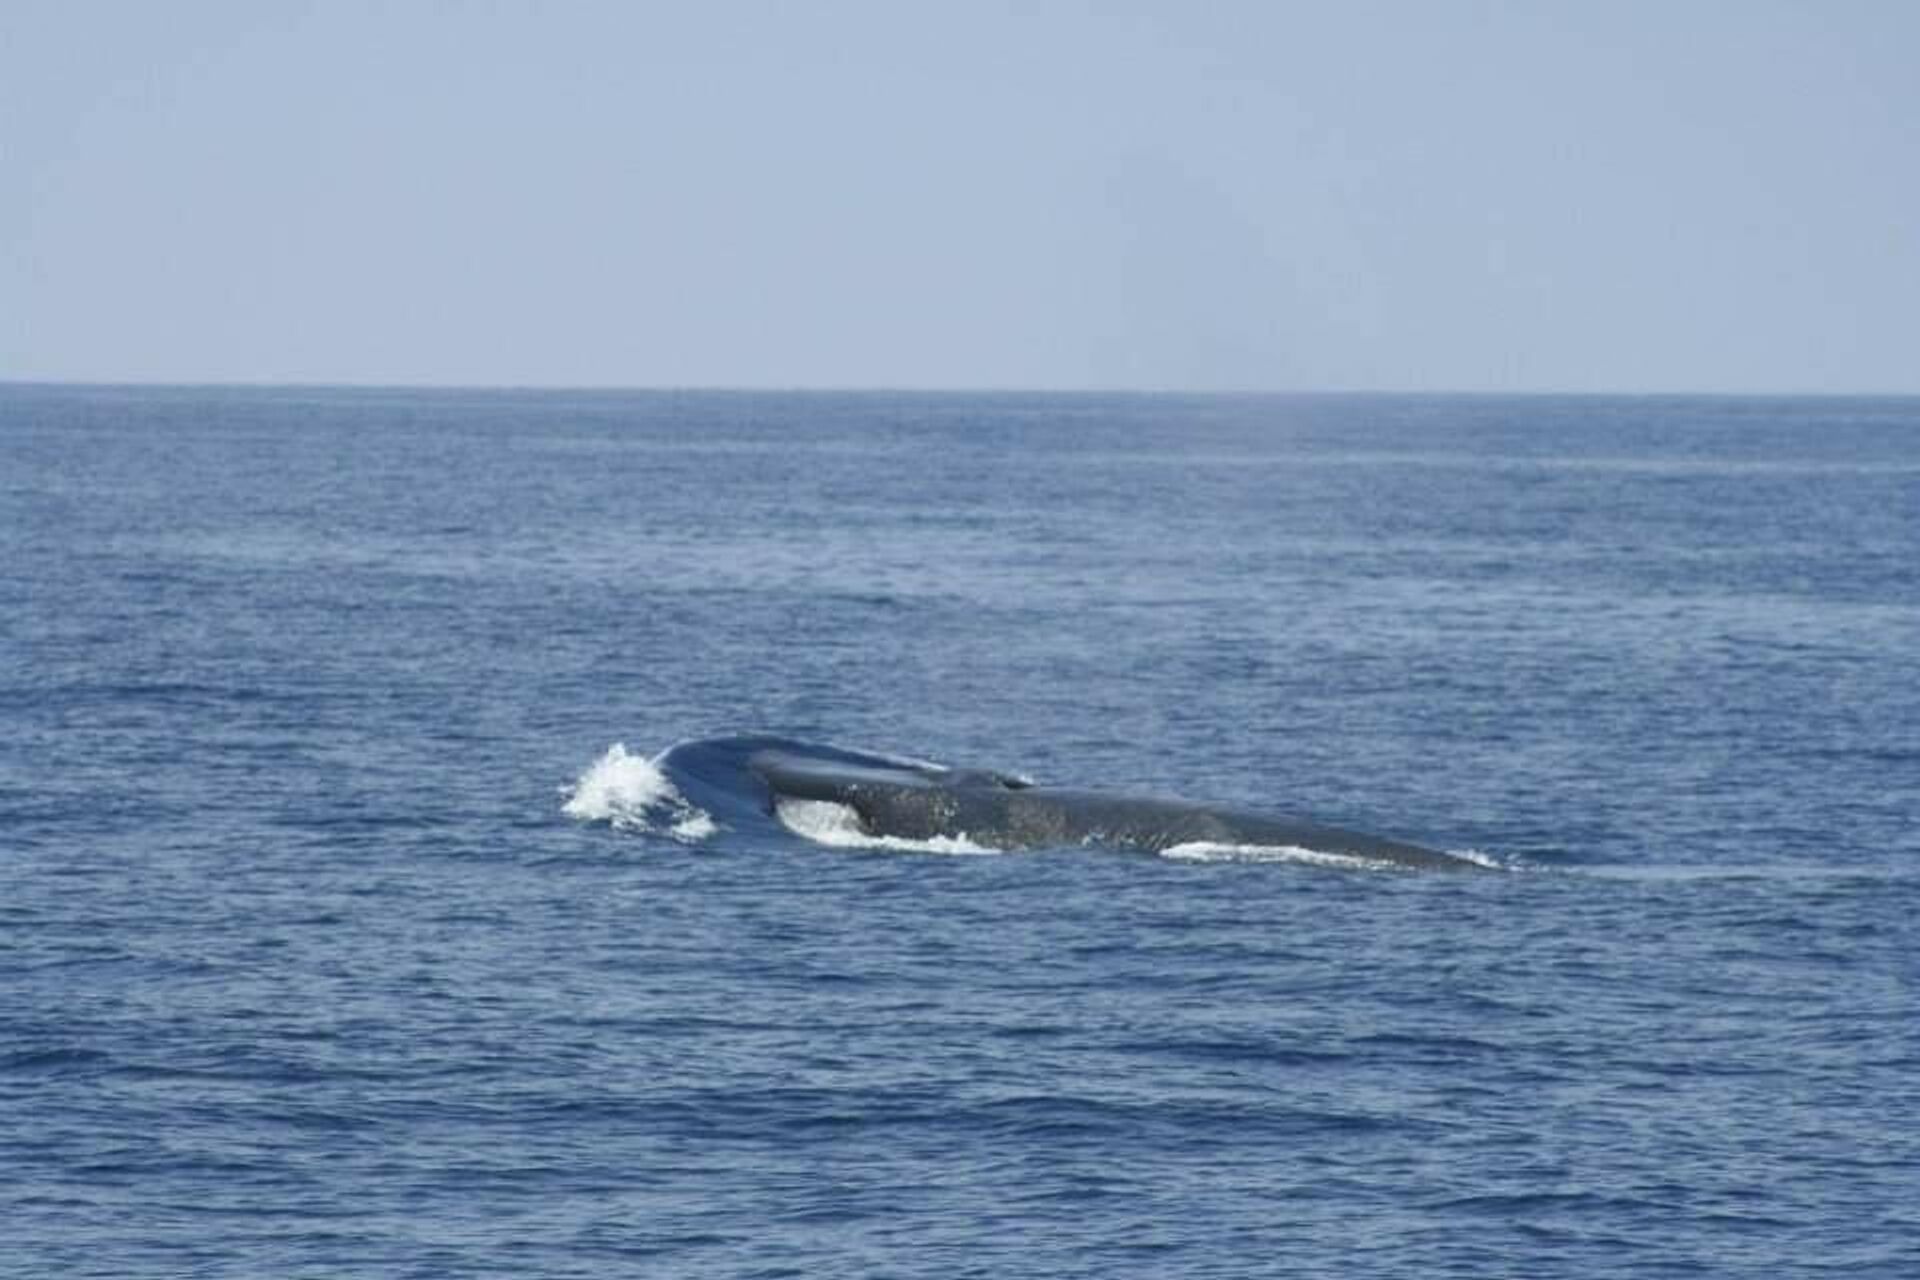 La ballena aleta, vista en cabo de Palos, puede tener una longitud de hasta 24 metros - Sputnik Mundo, 1920, 01.07.2021